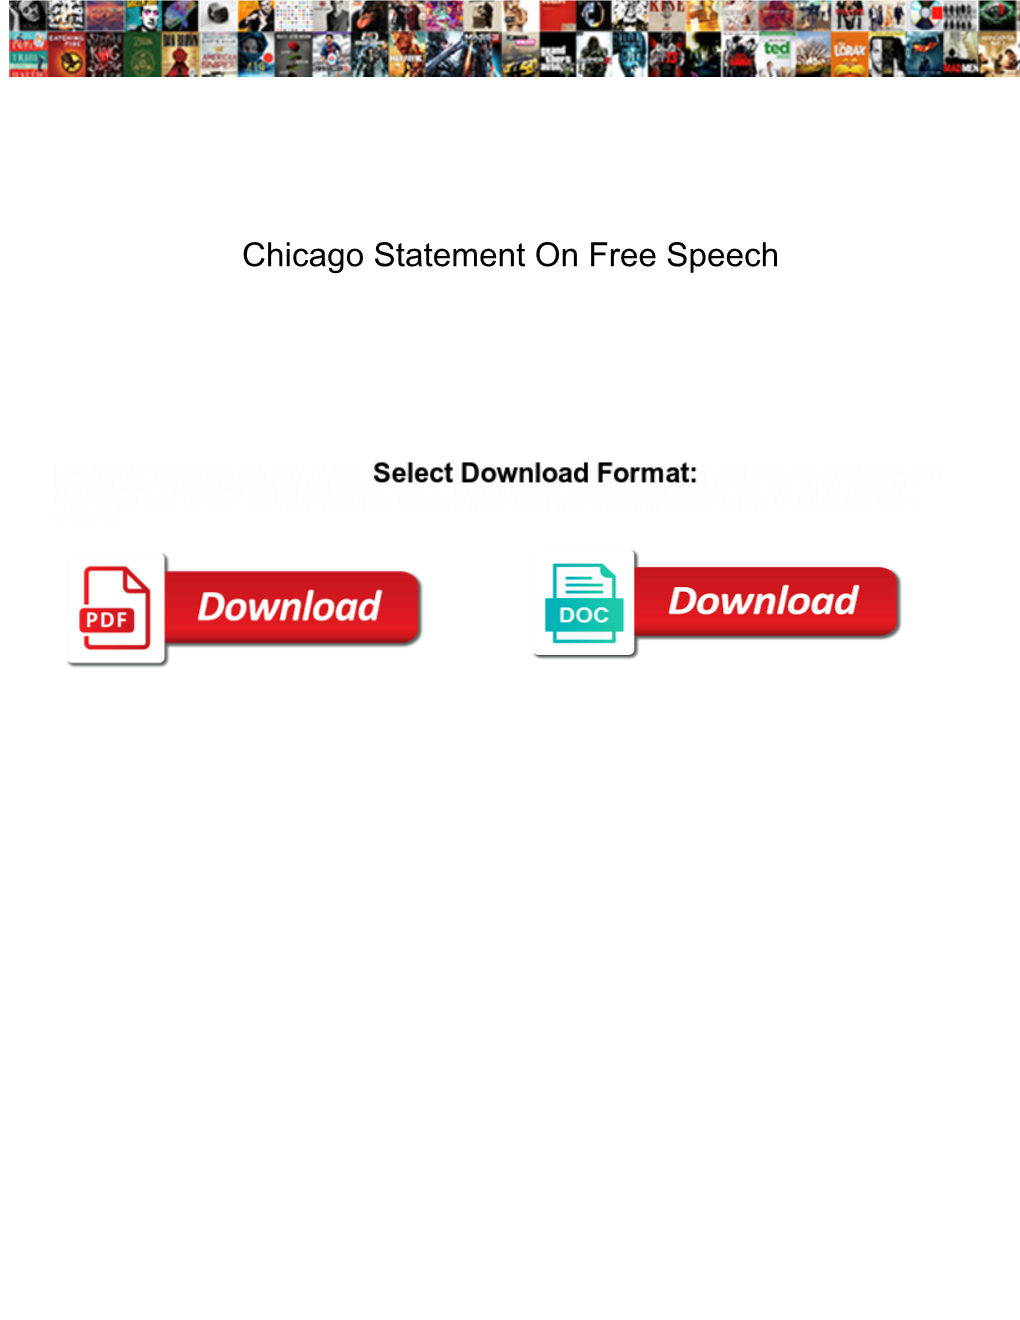 Chicago Statement on Free Speech